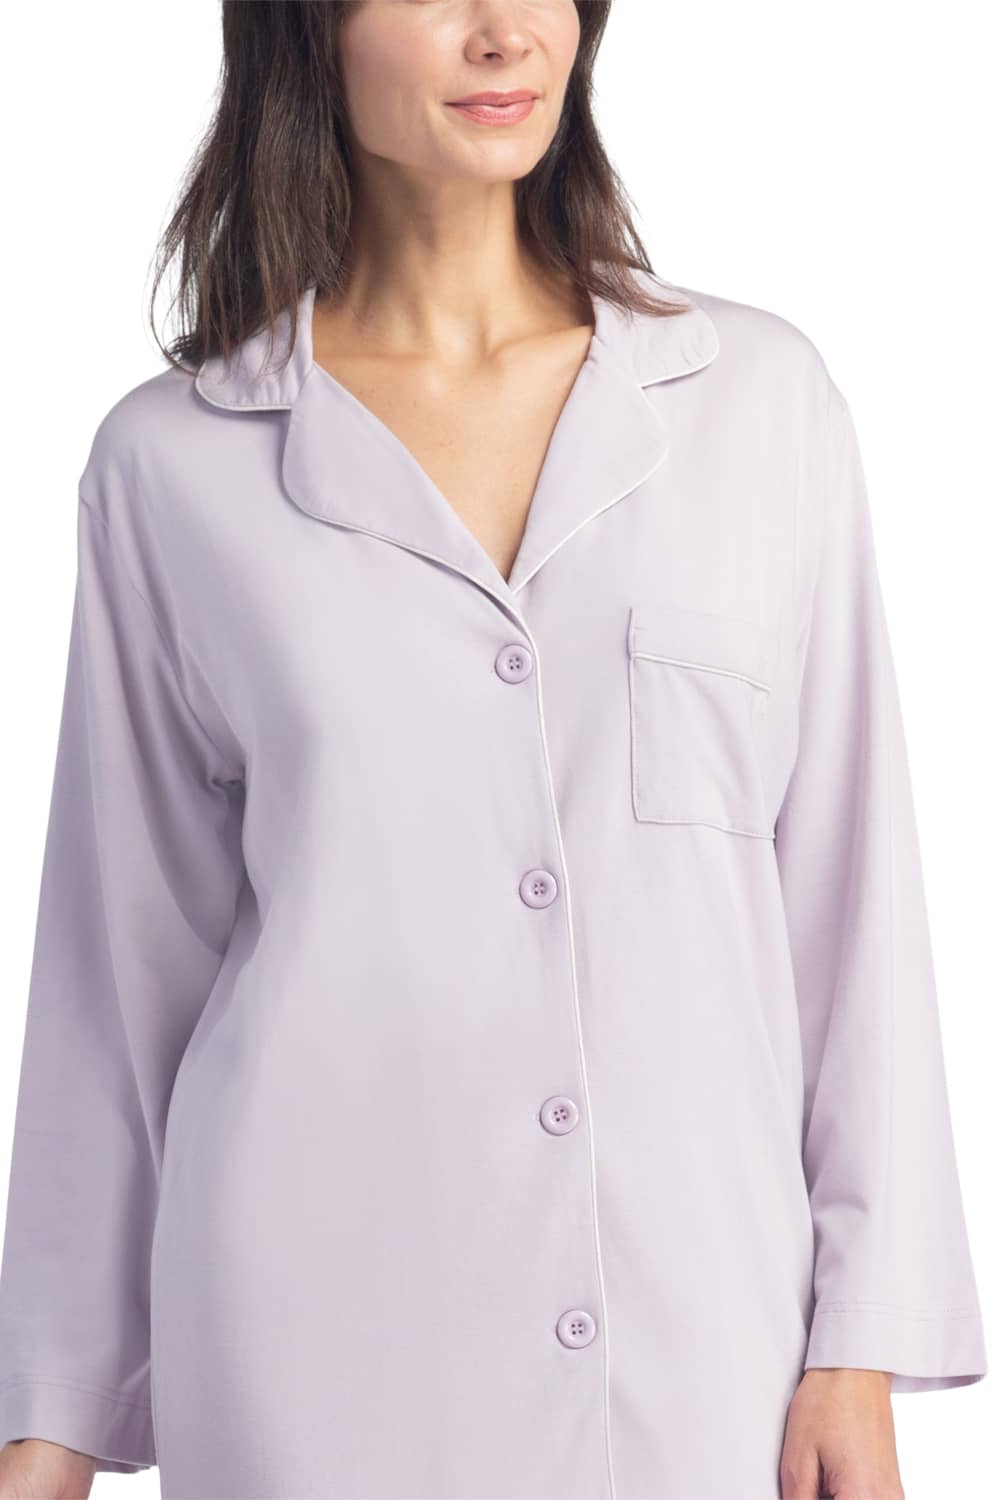 Women's Pajamas | Organic Cotton Full Length Pajamas | Fishers Finery